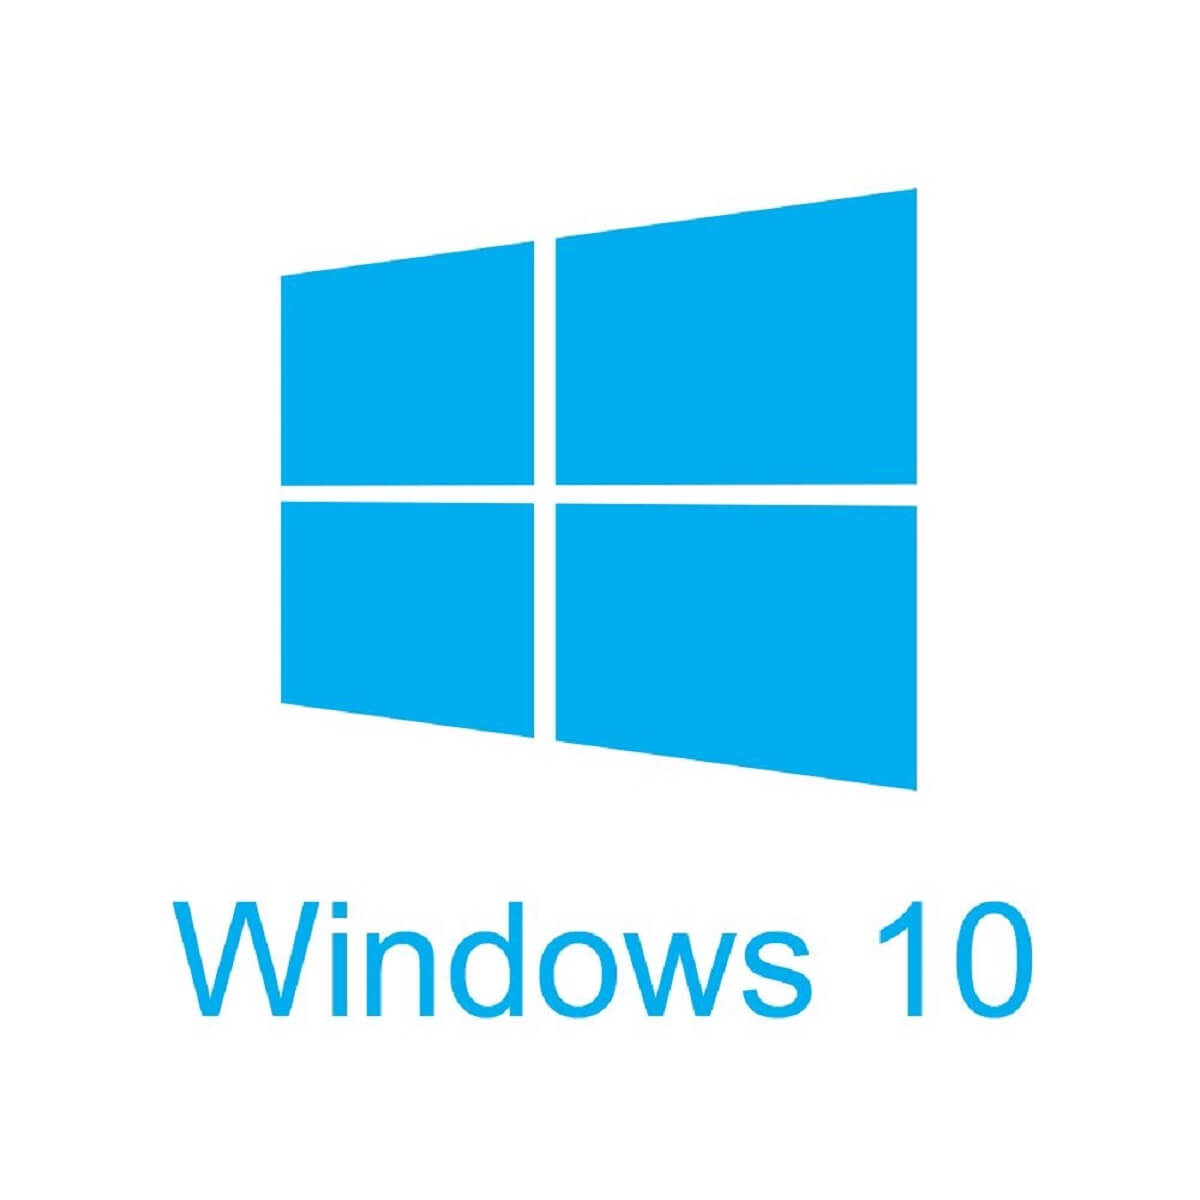 Windows 10 1909 bugs